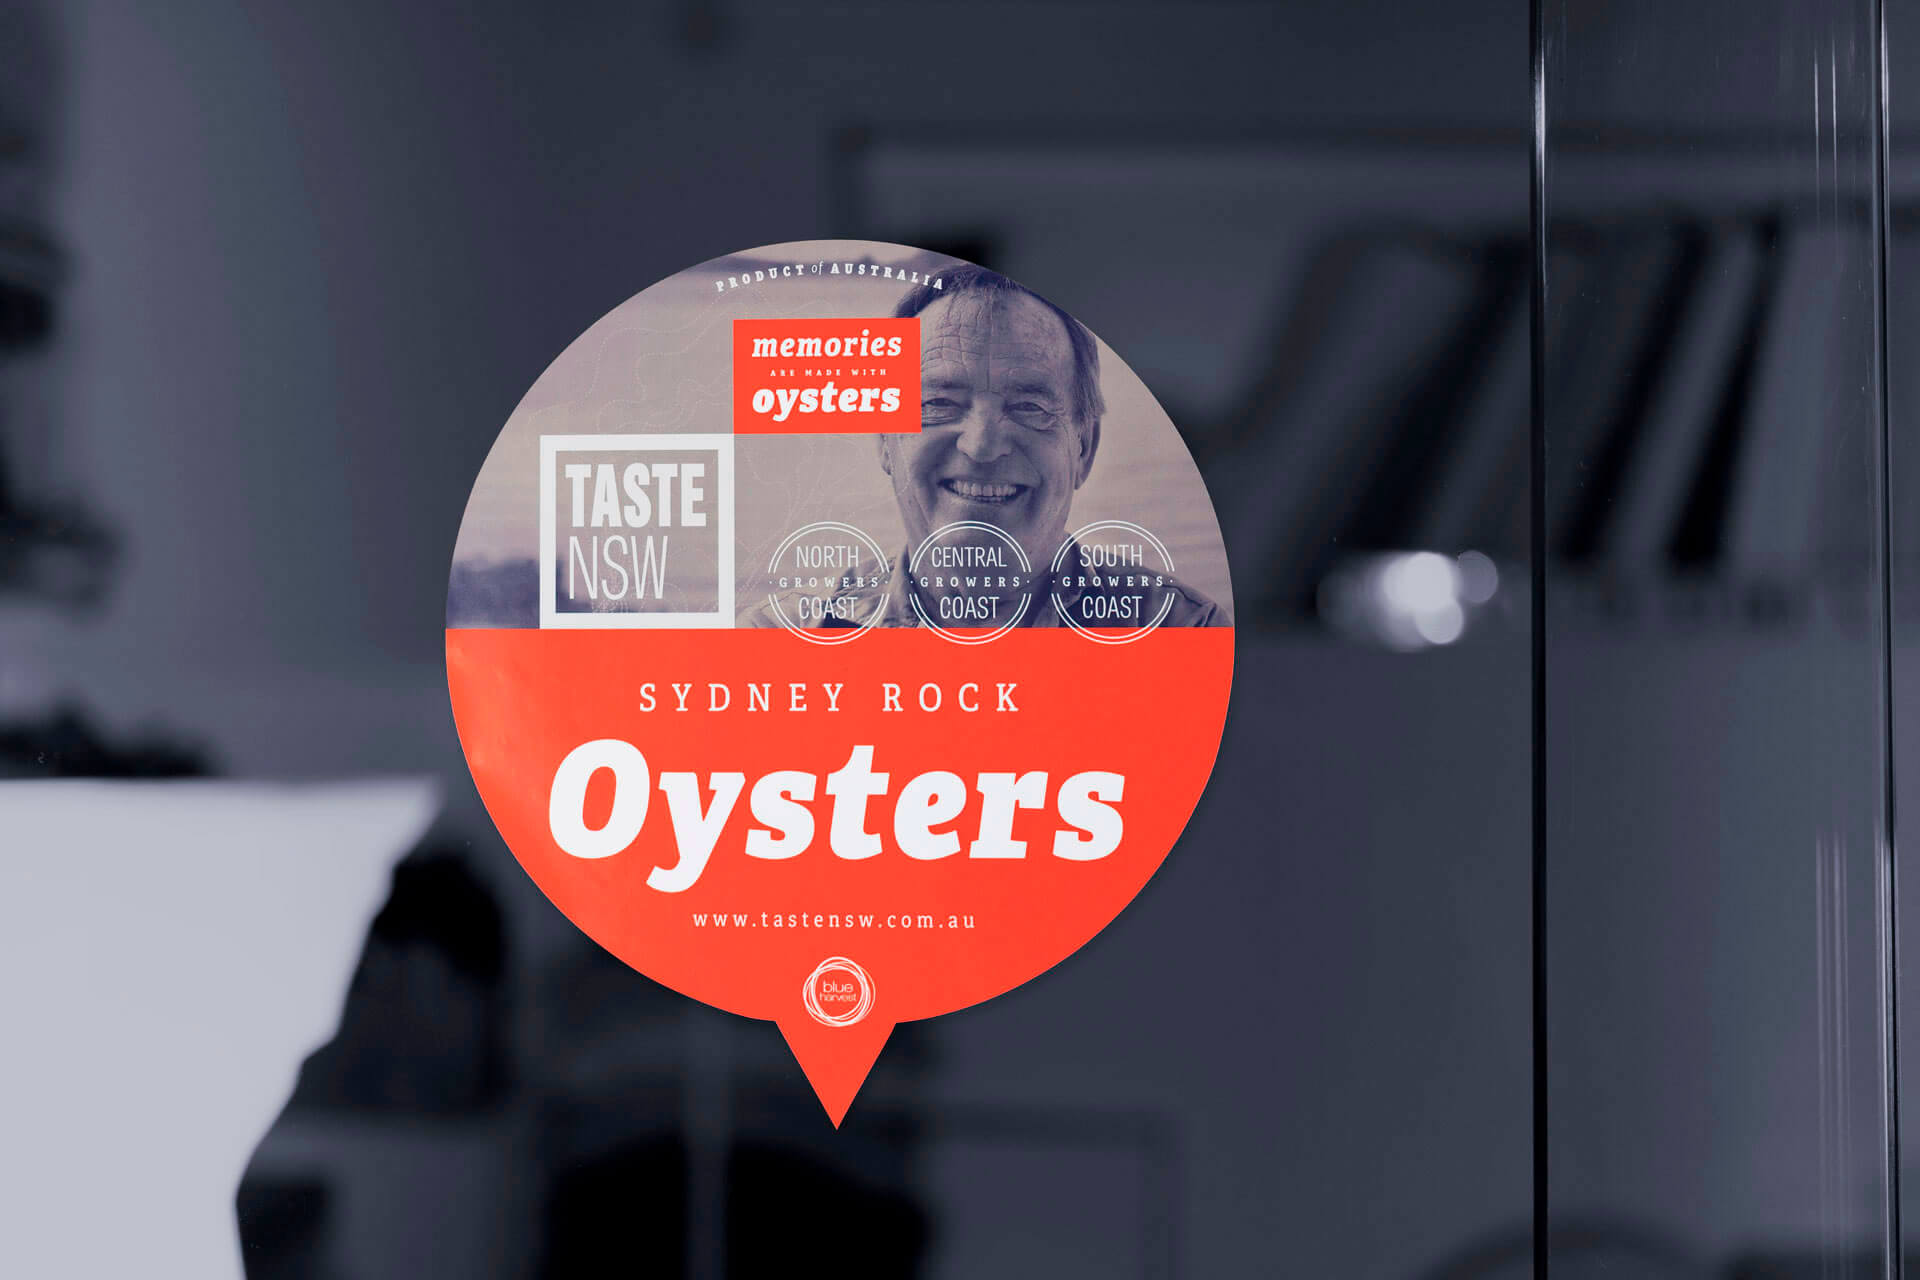 Distintivo para establecimientos colaboradores de la empresa australiana Taste NSW